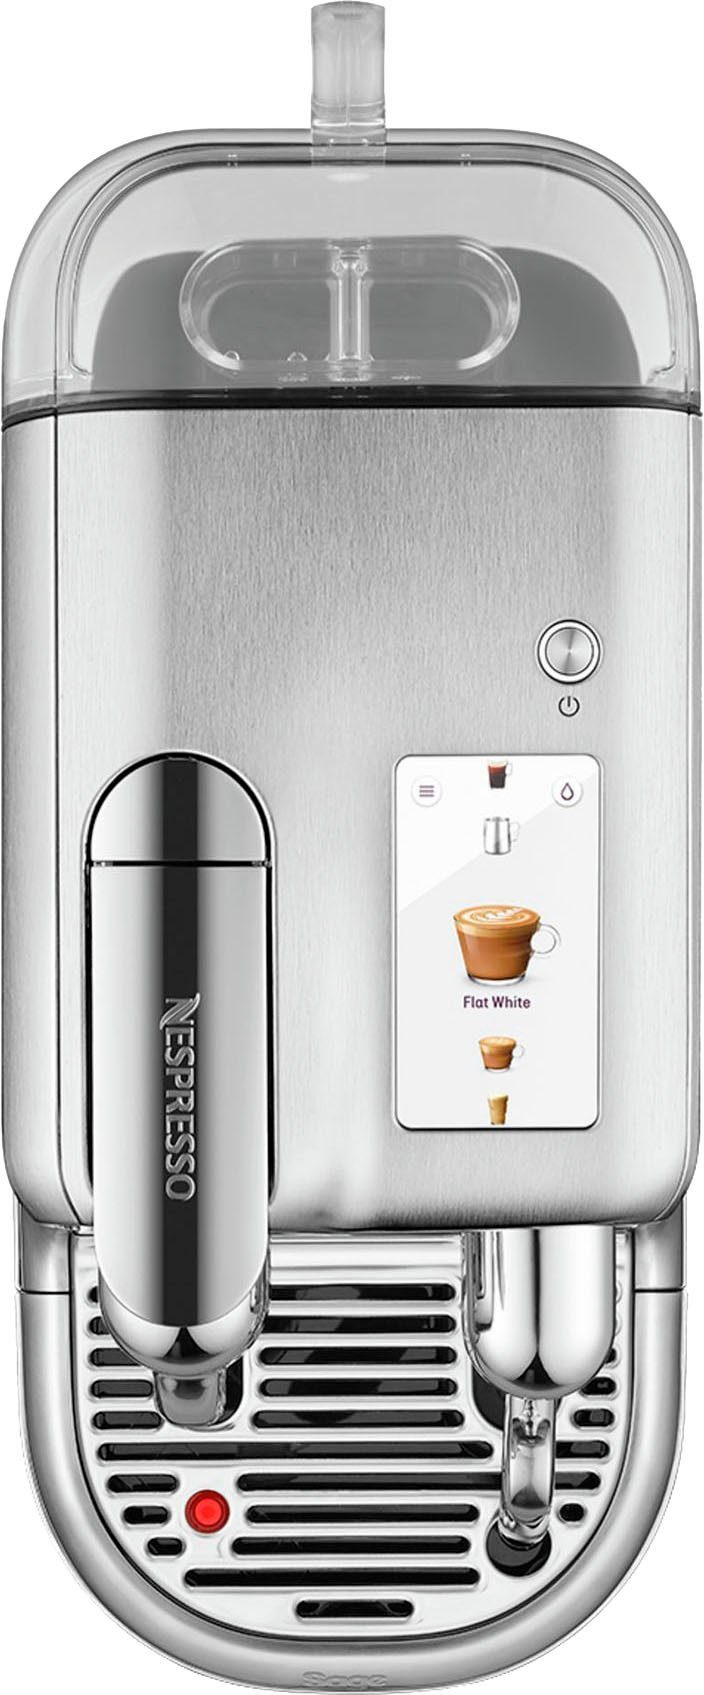 Kapseln mit 14 Willkommenspaket Creatista inkl. Pro Nespresso SNE900 Kapselmaschine Edelstahl-Milchkanne, mit